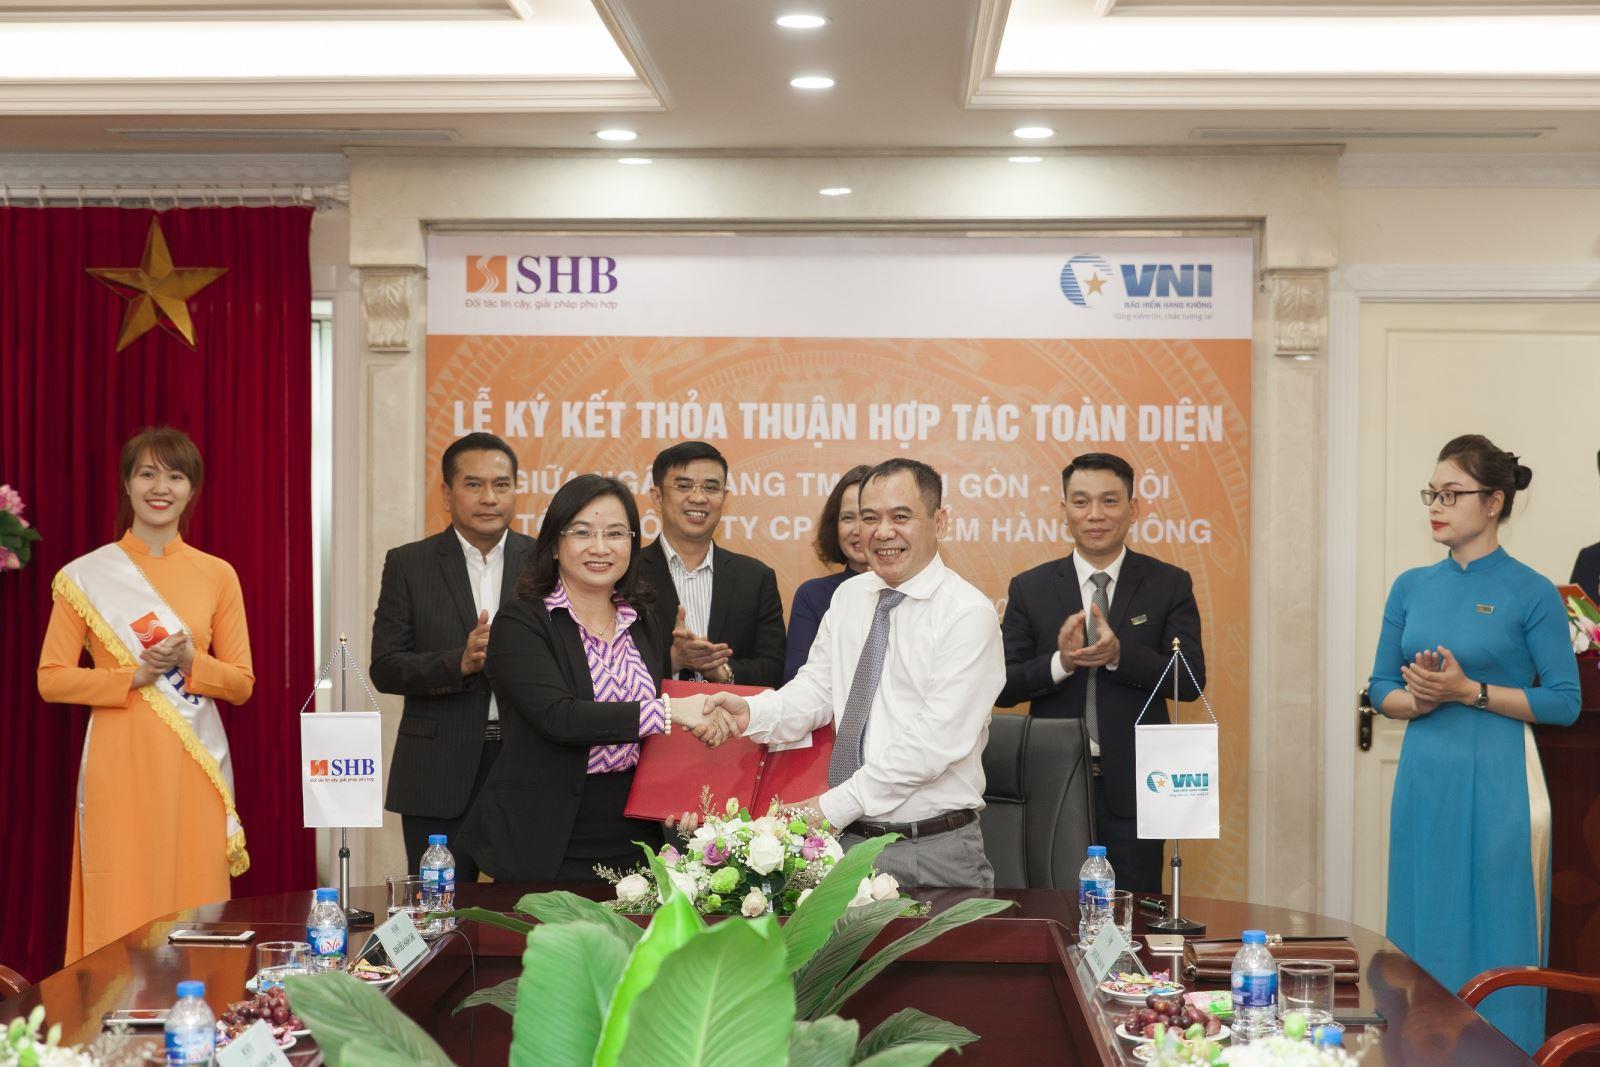 VNI & SHB Ký kết thỏa thuận hợp tác mang lợi ích cho khách hàng